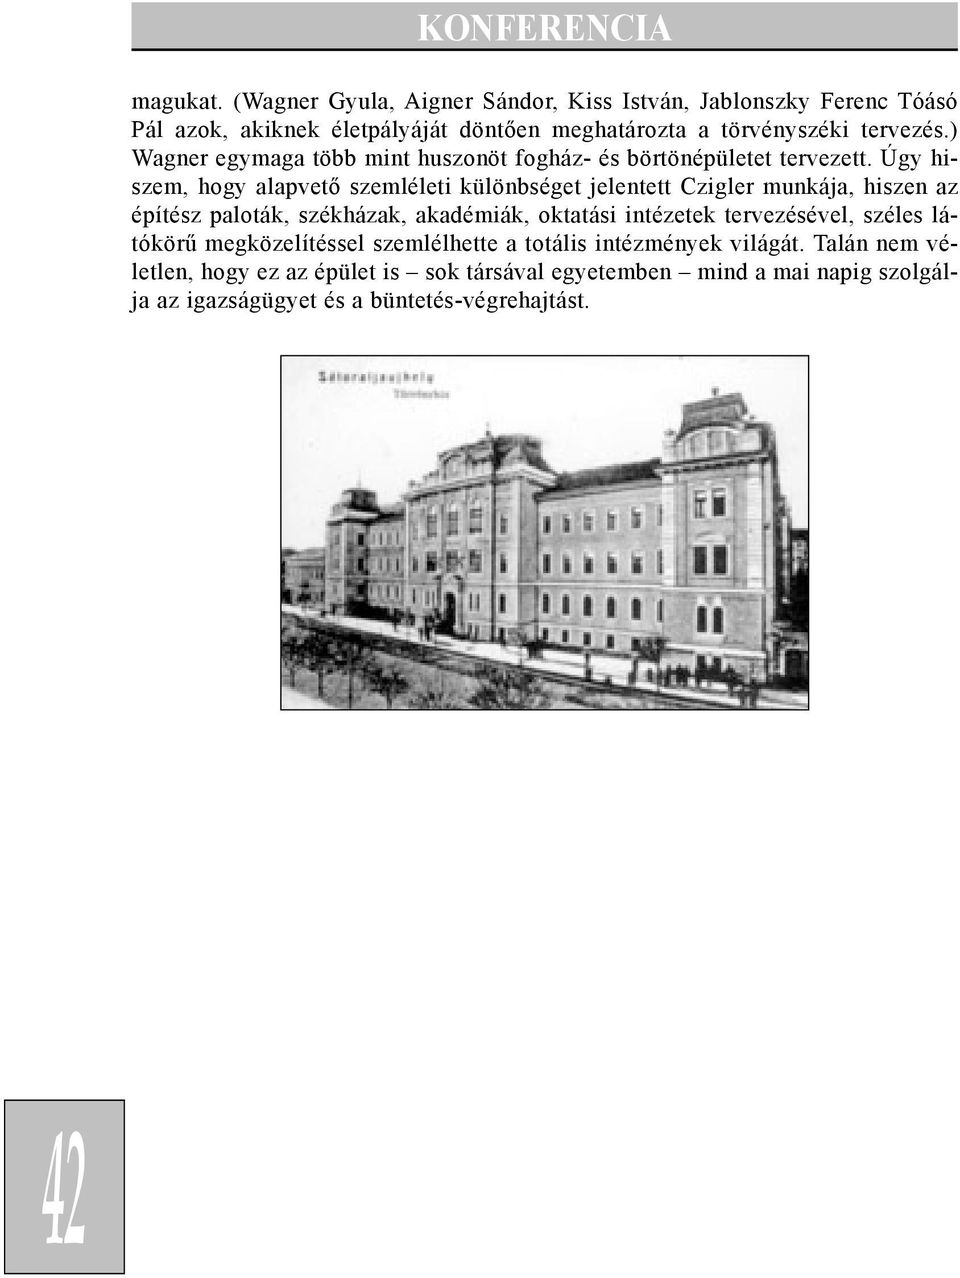 ) Wagner egymaga több mint huszonöt fogház- és börtönépületet tervezett.